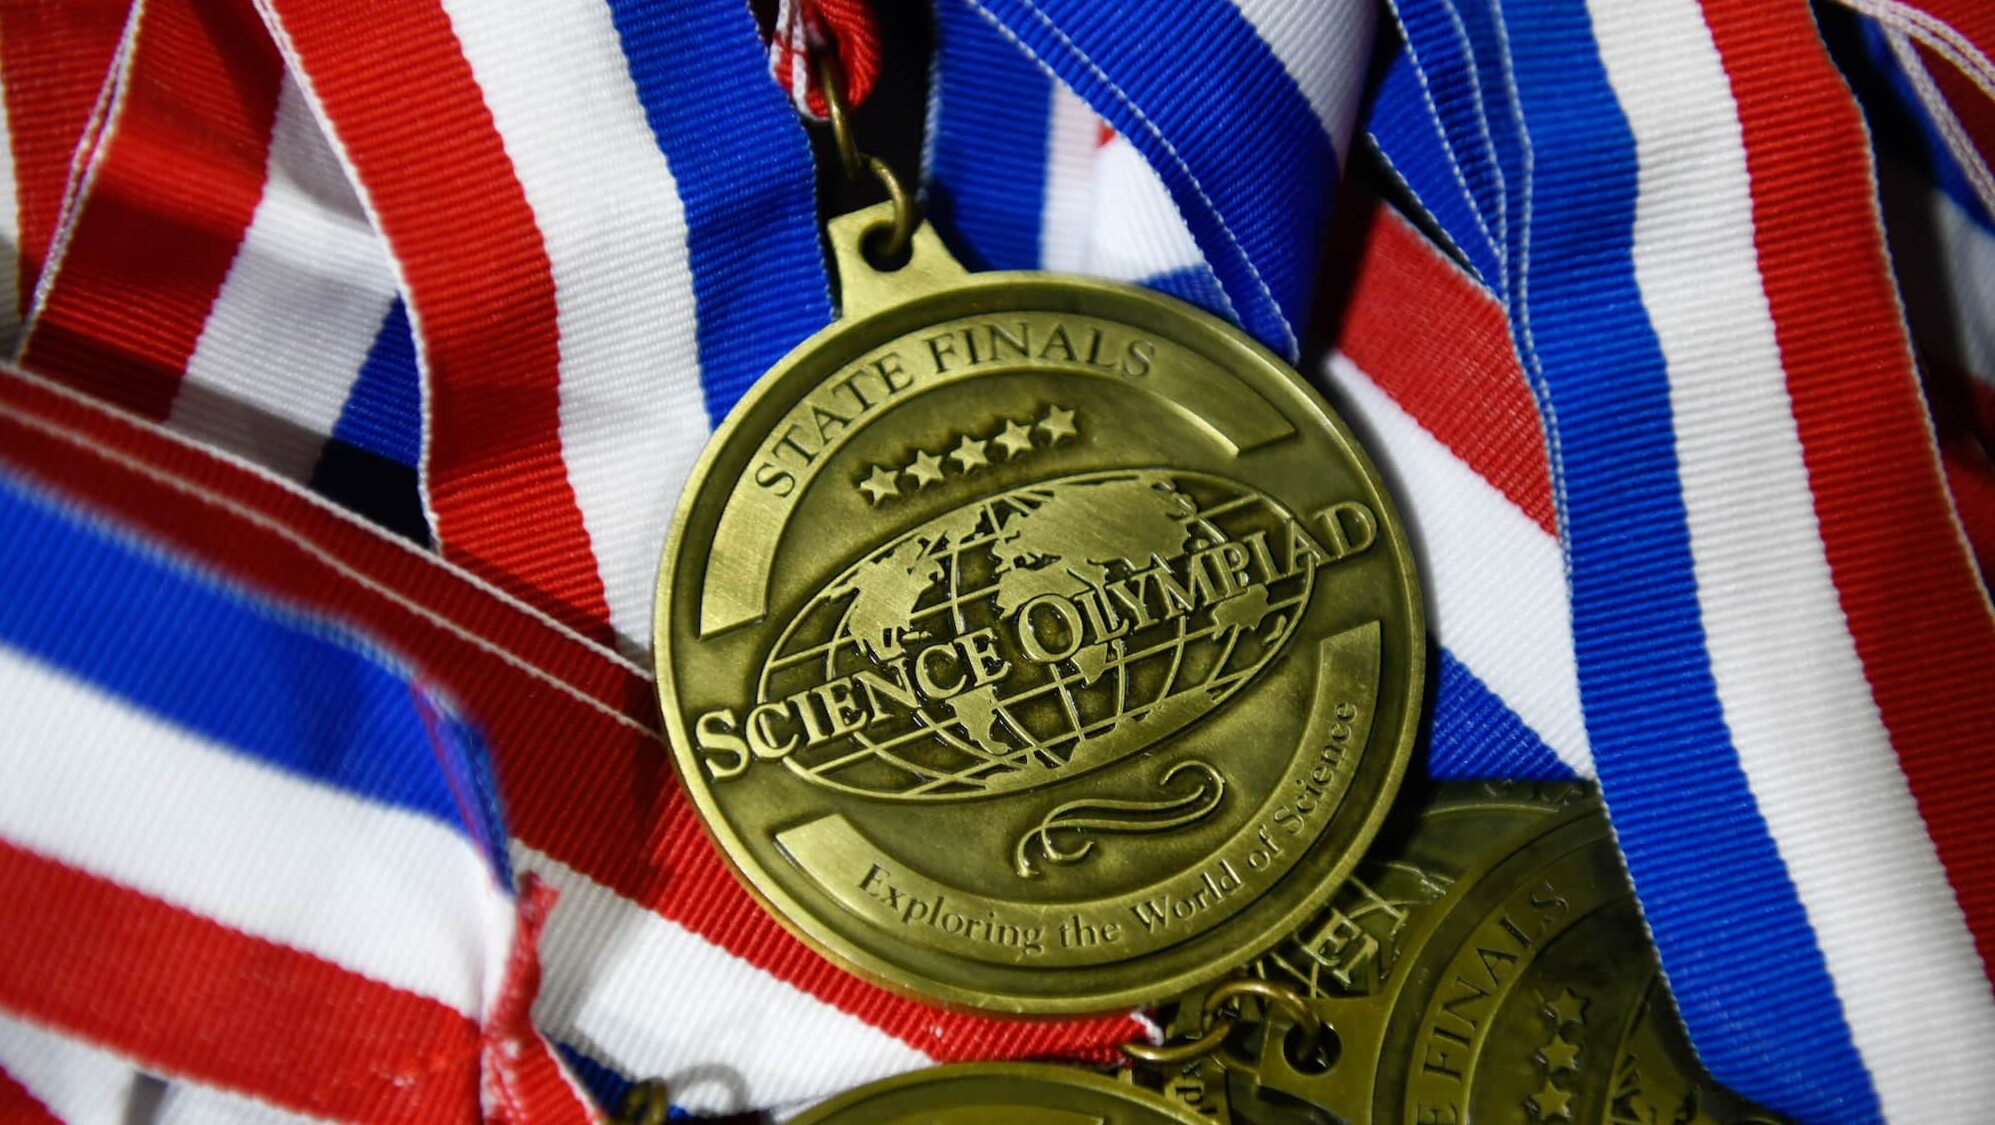 N.C. Science Olympiad medal